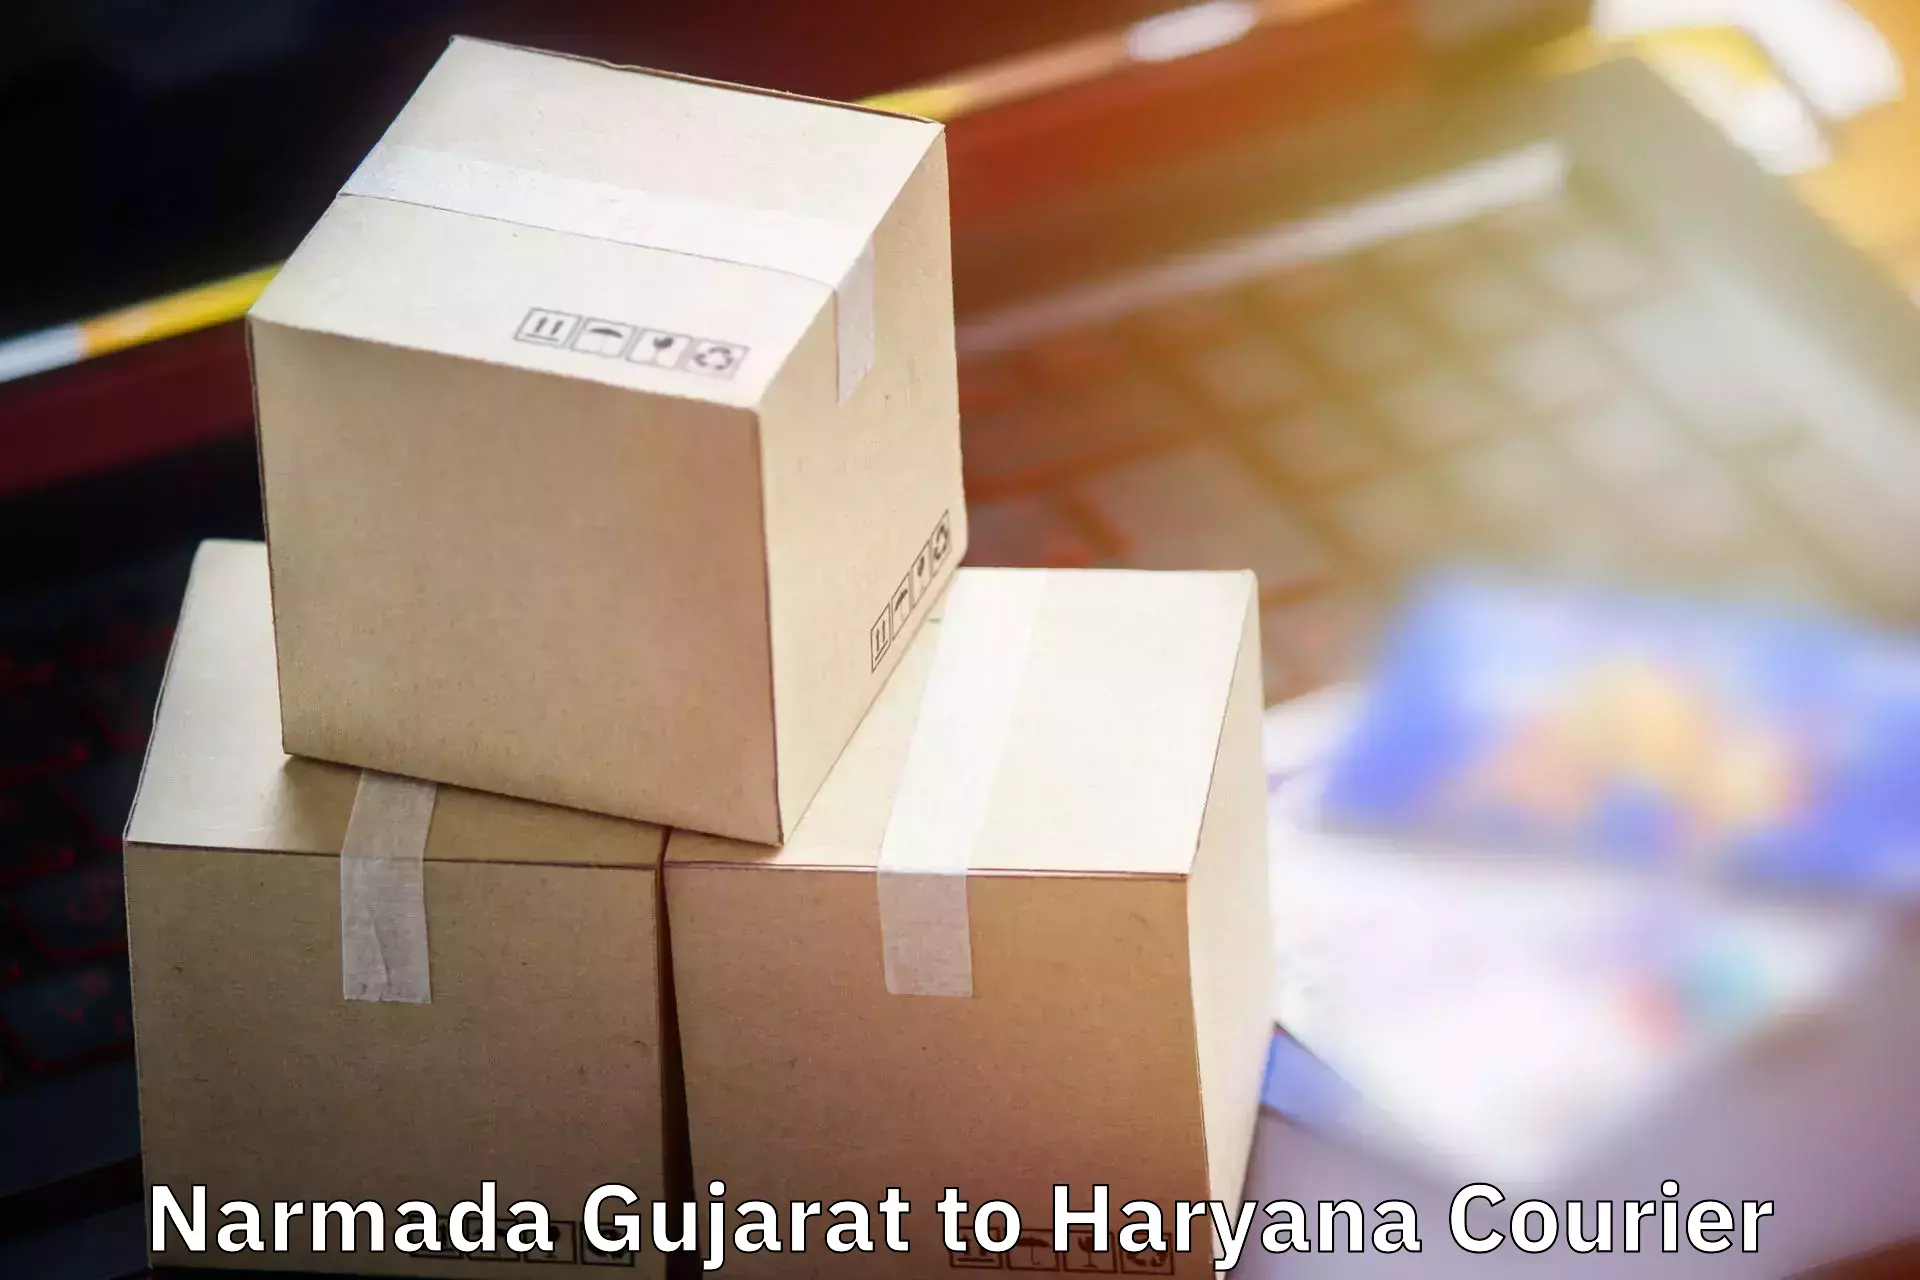 Baggage shipping advice Narmada Gujarat to Taraori